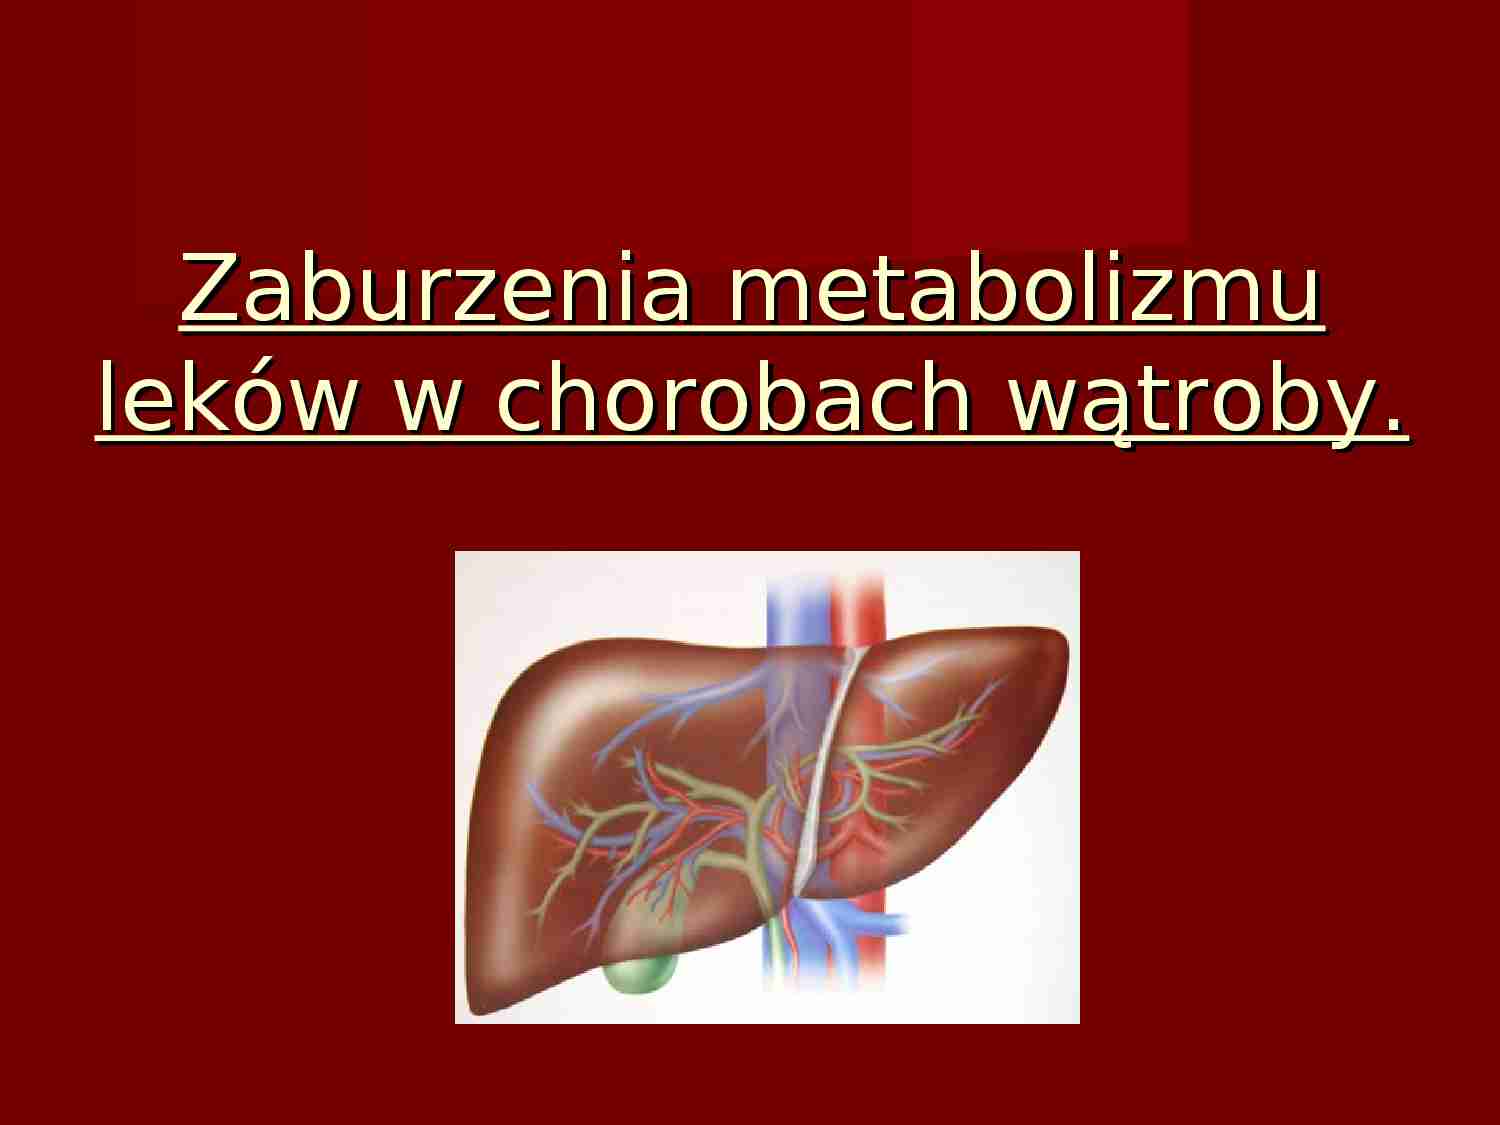 Zaburzenia metabolizmu leków w chorobach wątroby - prezentacja - strona 1